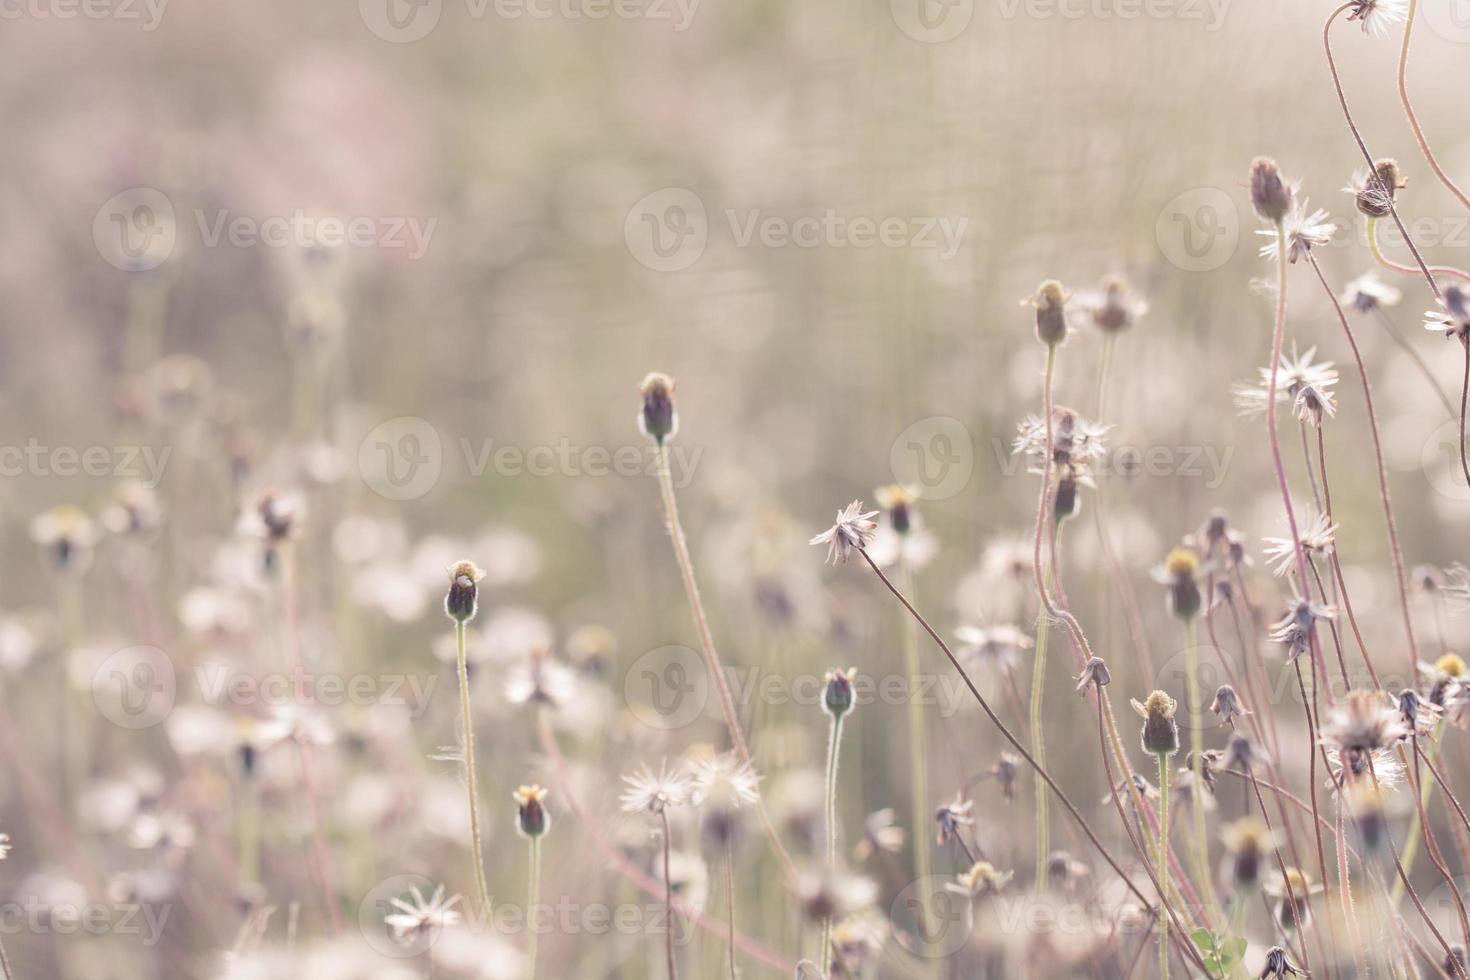 Wiesenblumen in weichem, warmem Licht. verschwommener natürlicher hintergrund der weinleseherbstlandschaft foto